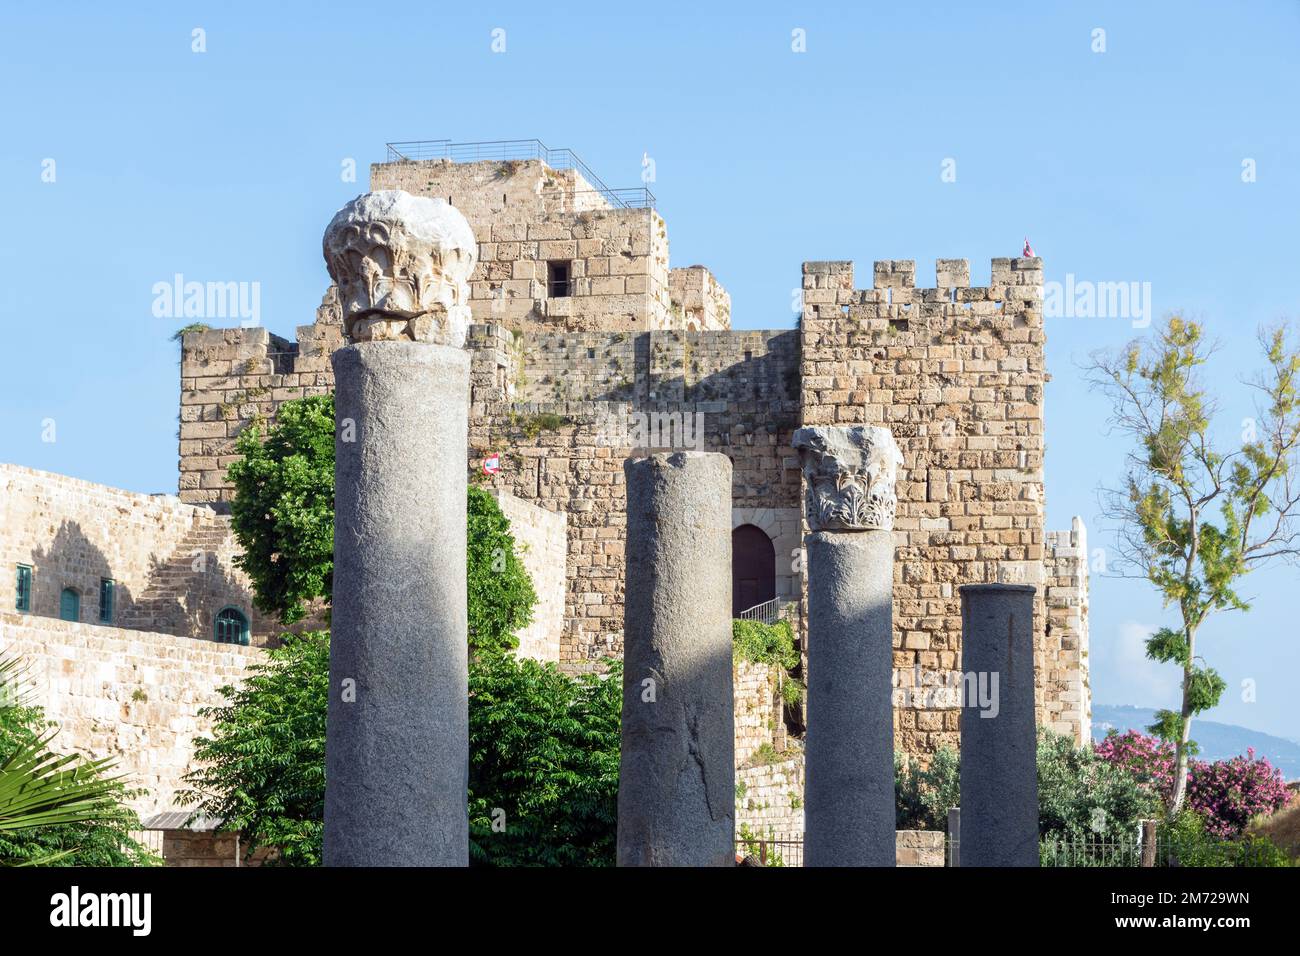 Colonnes romaines et citadelle Byblos, château Crusader, Jbeil, Liban Banque D'Images